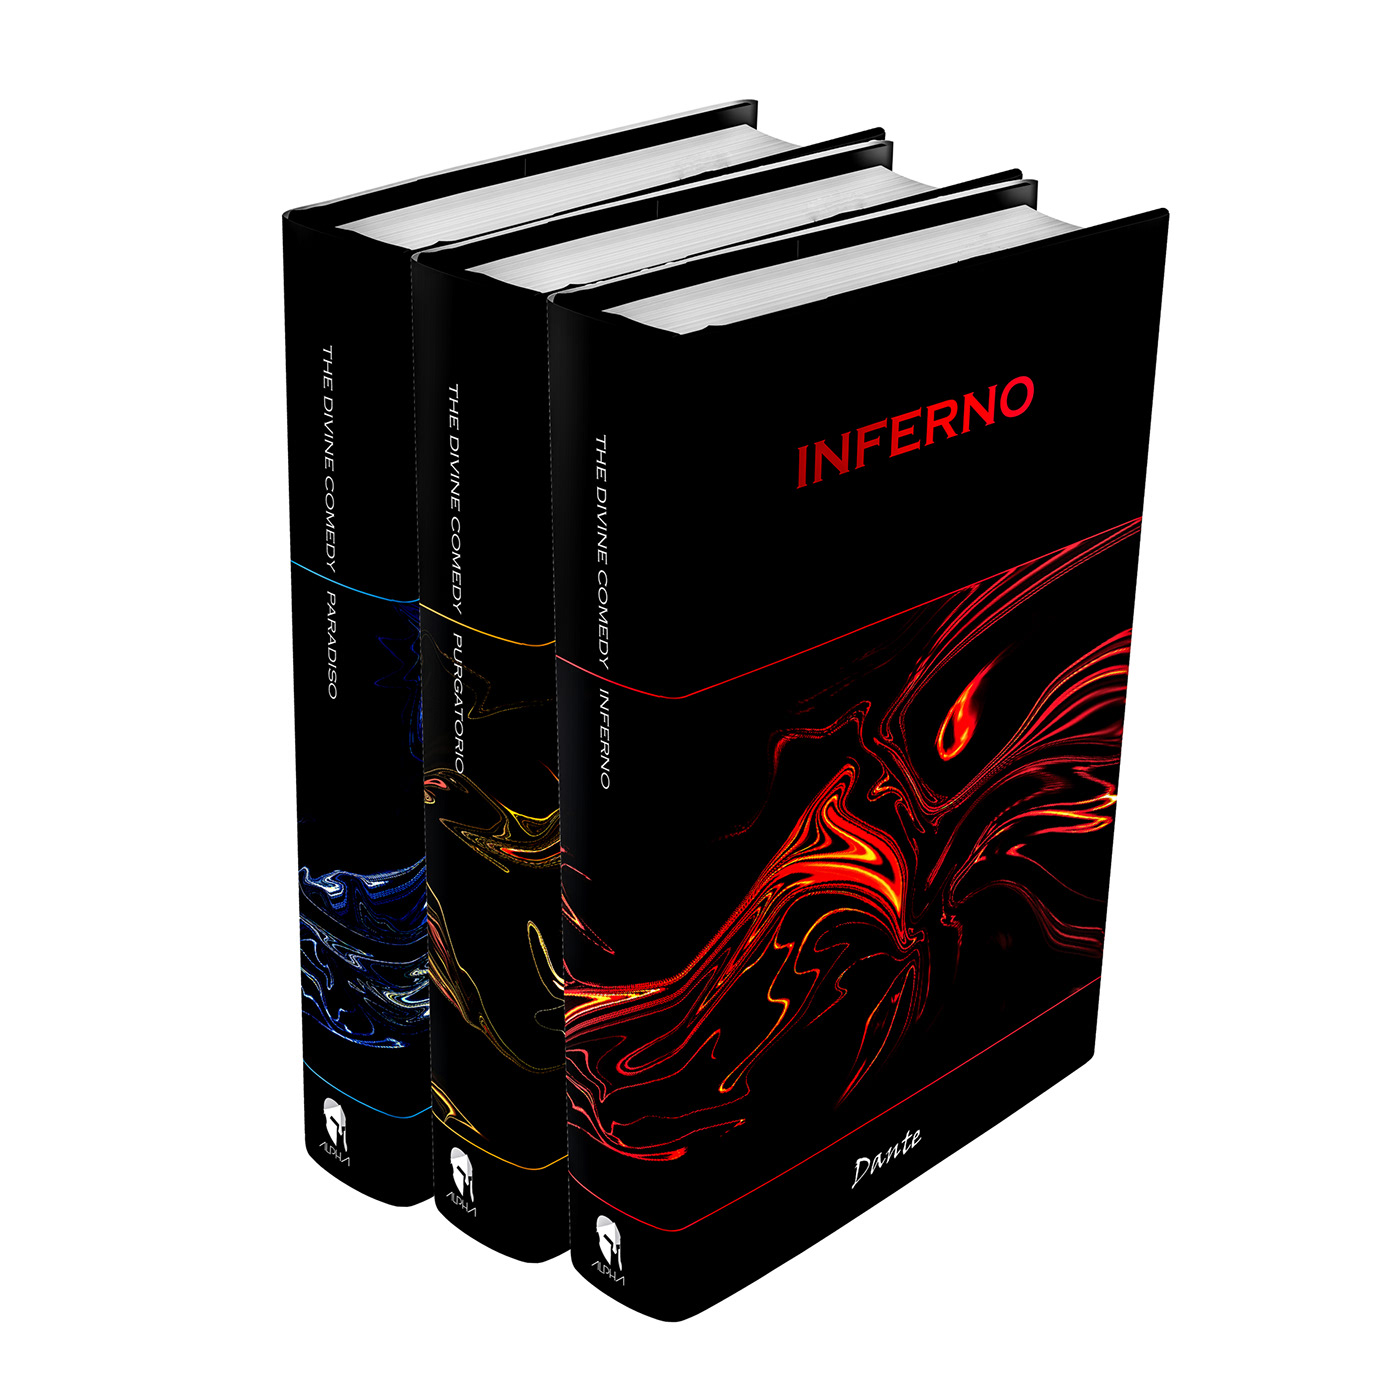 Book Cover Design set books dante INFERNO purgatorio Paradiso Dante's Inferno